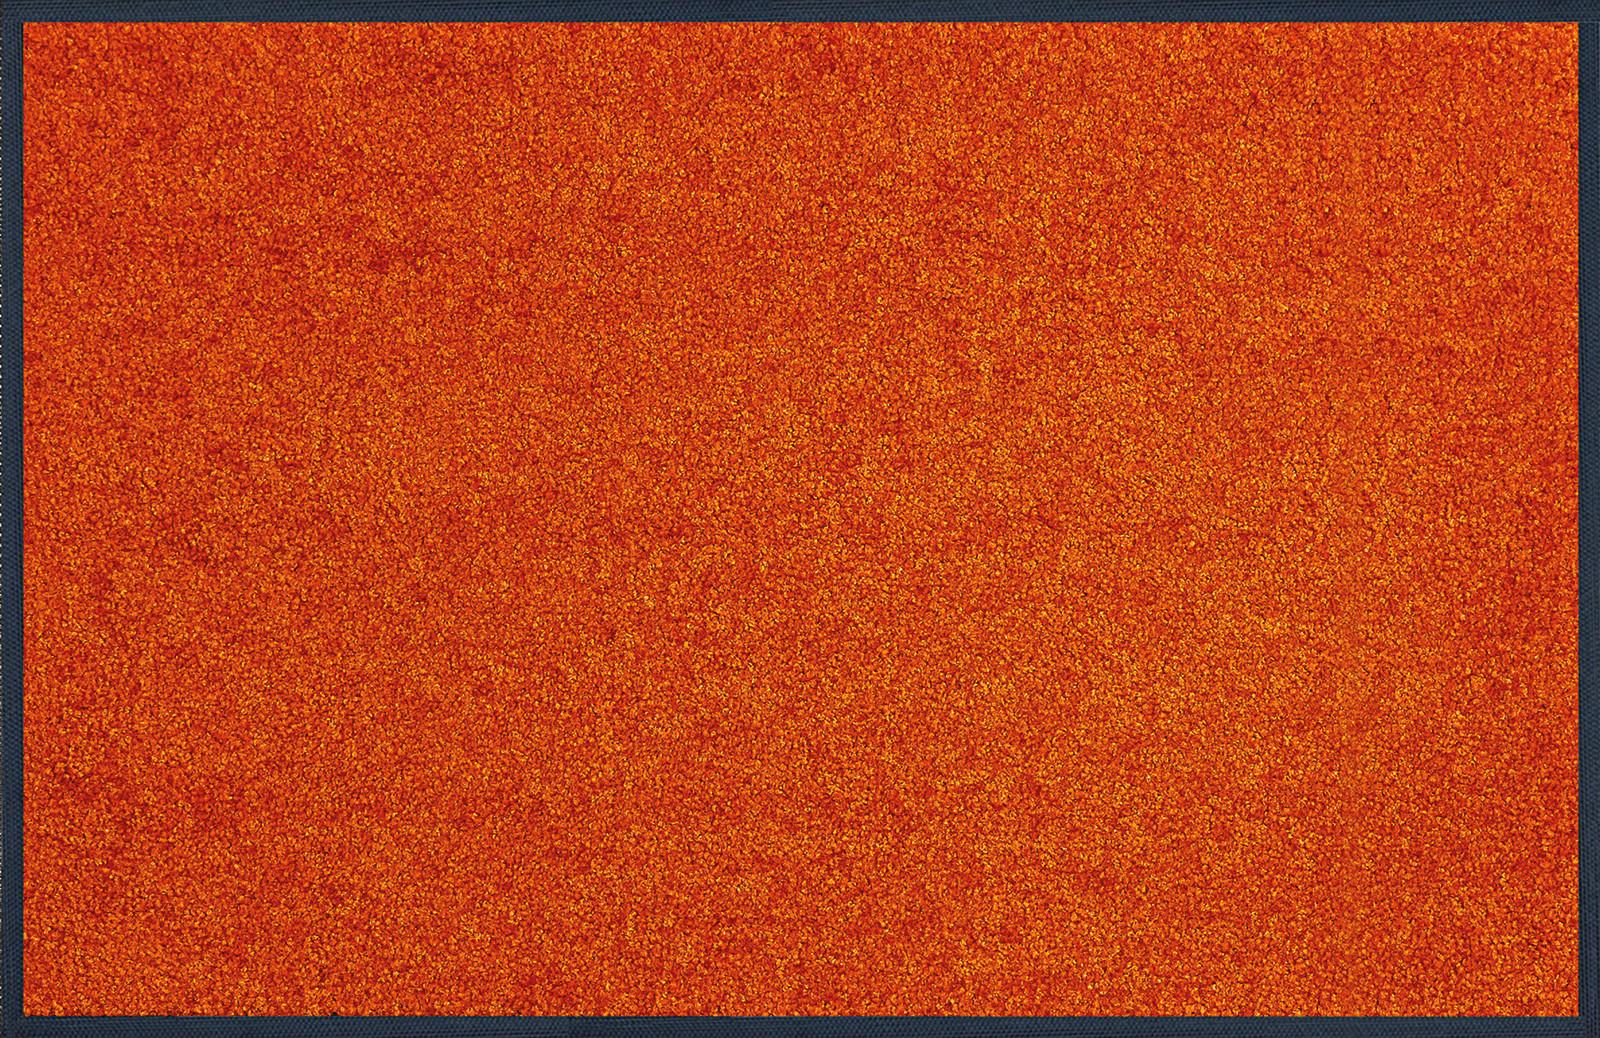 Fußmatte Burnt Orange 75x190 cm Rutschfest - Orange, KONVENTIONELL, Textil (75/190cm) - Esposa